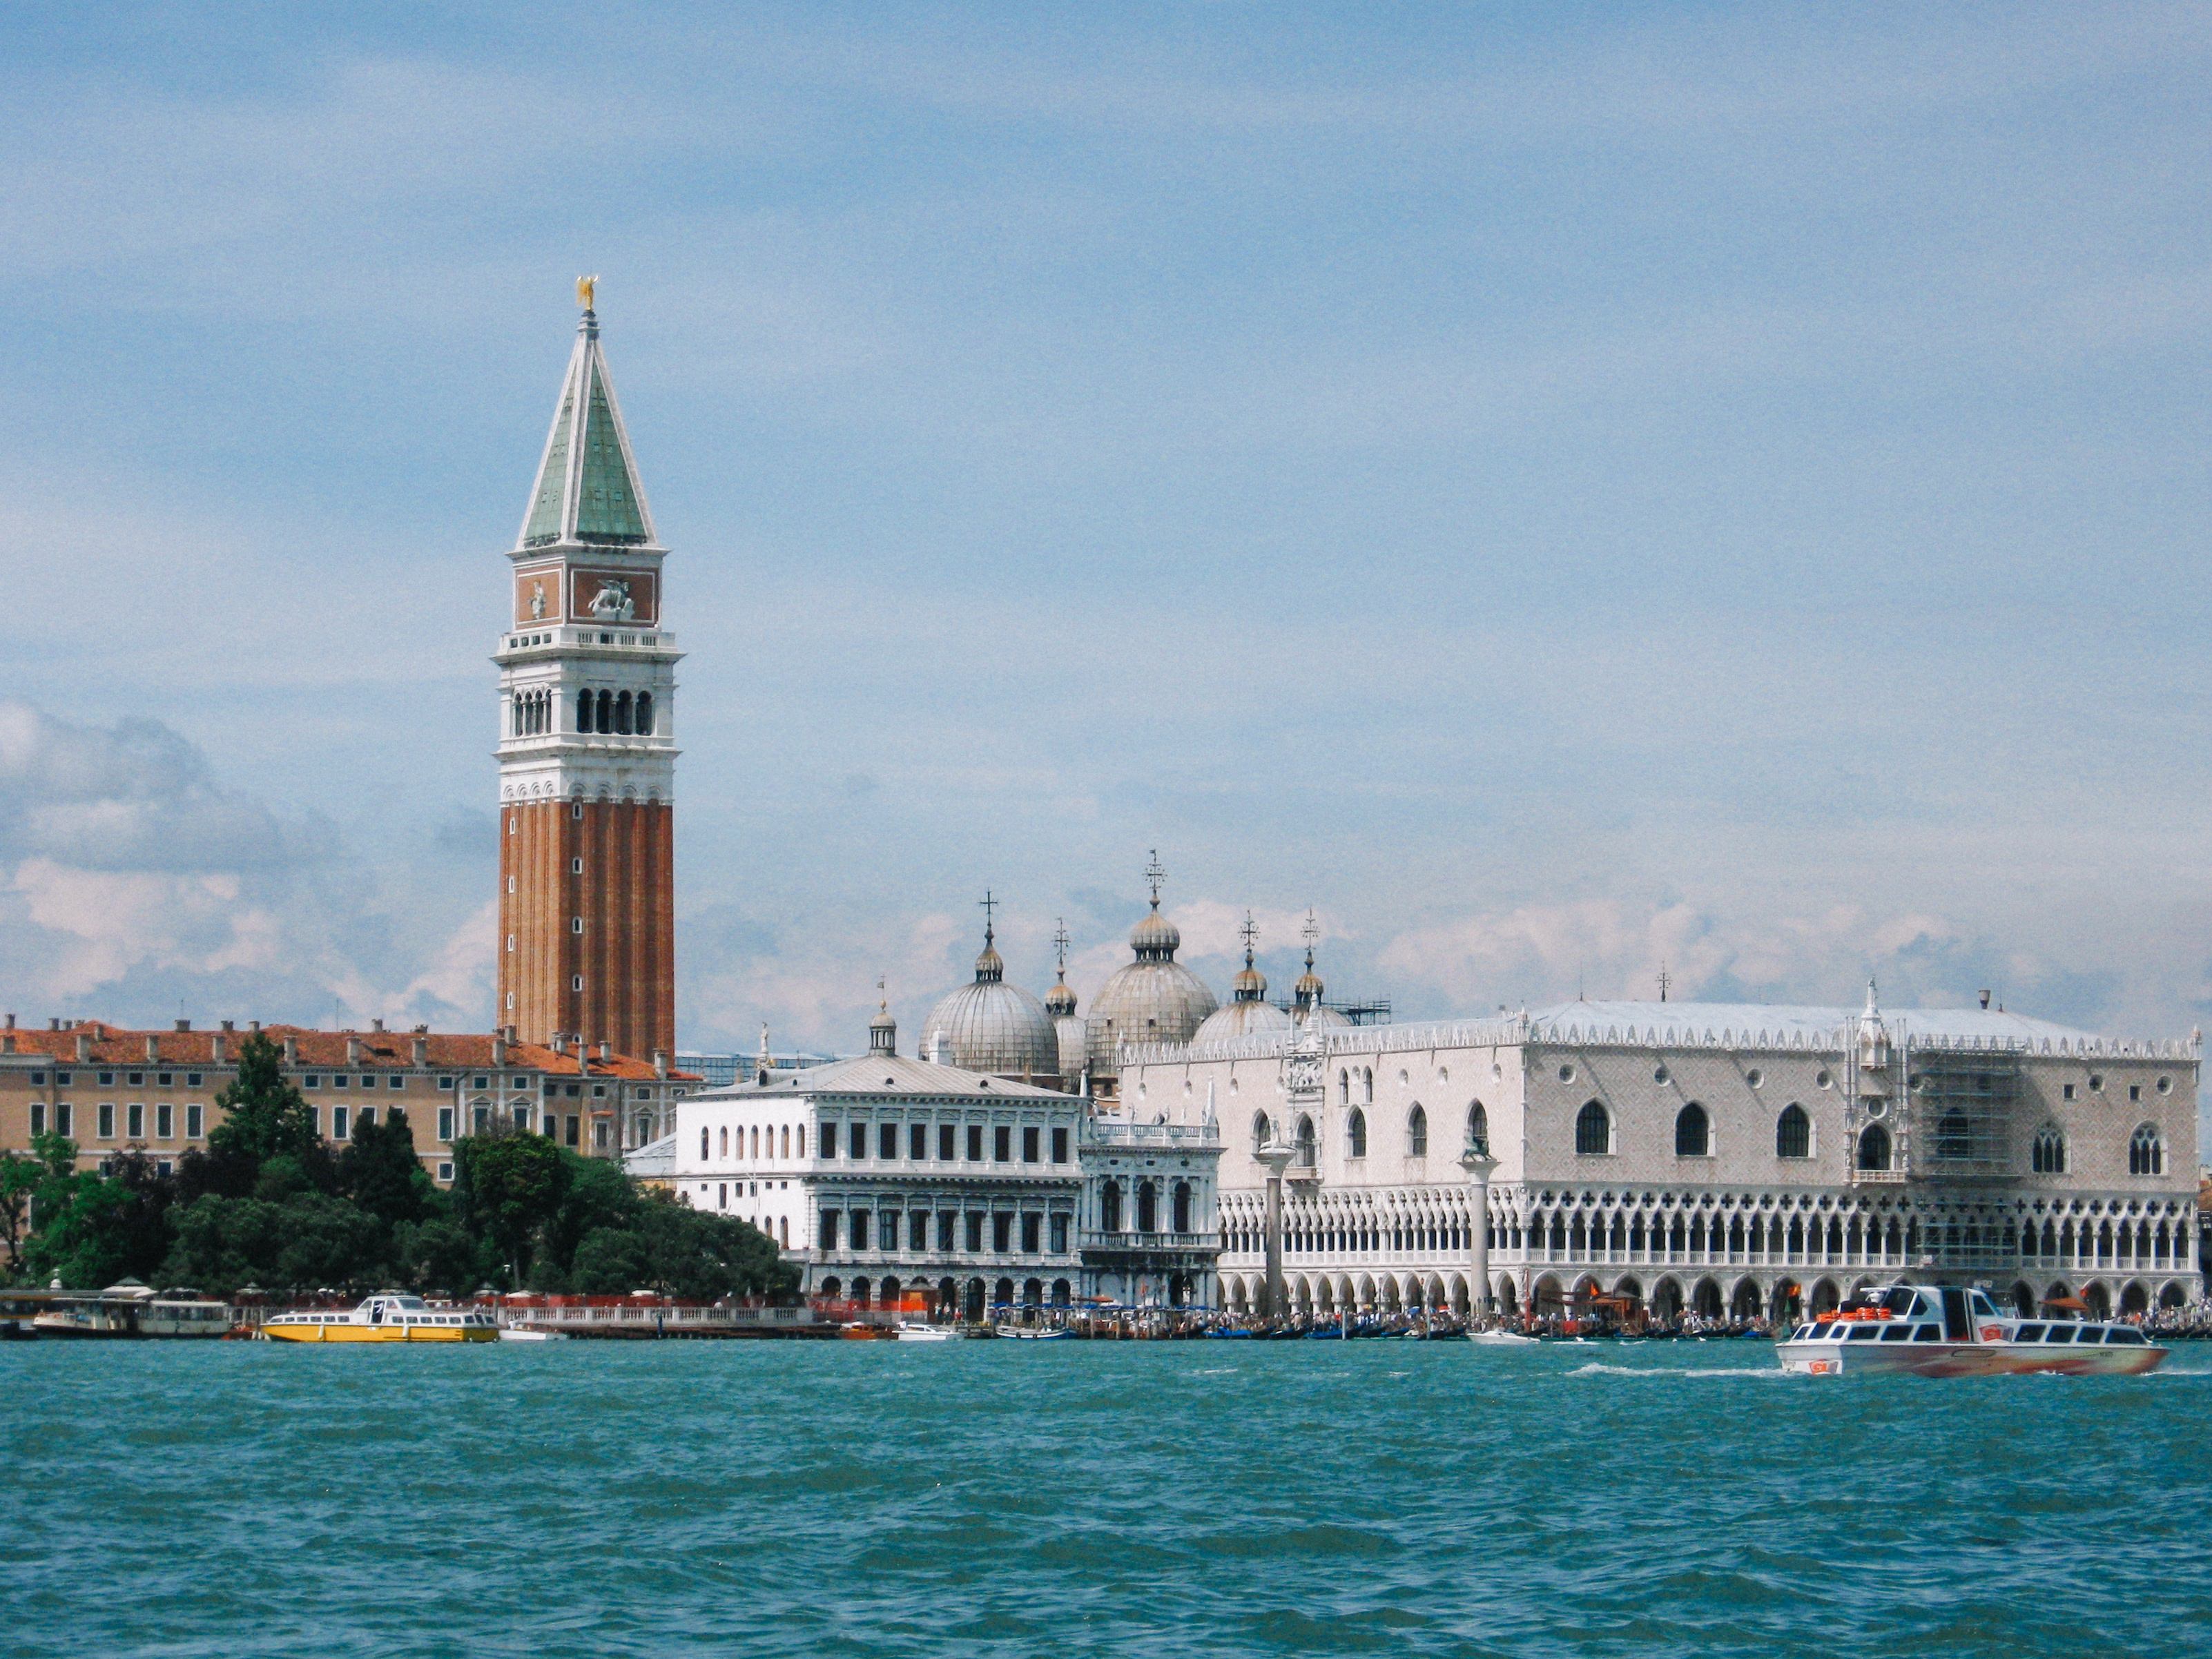 ヴェネツィアを流れる川の向こうにみえる大鐘楼とサン マルコ寺院の屋根 イタリア の写真素材 ぱくたそ